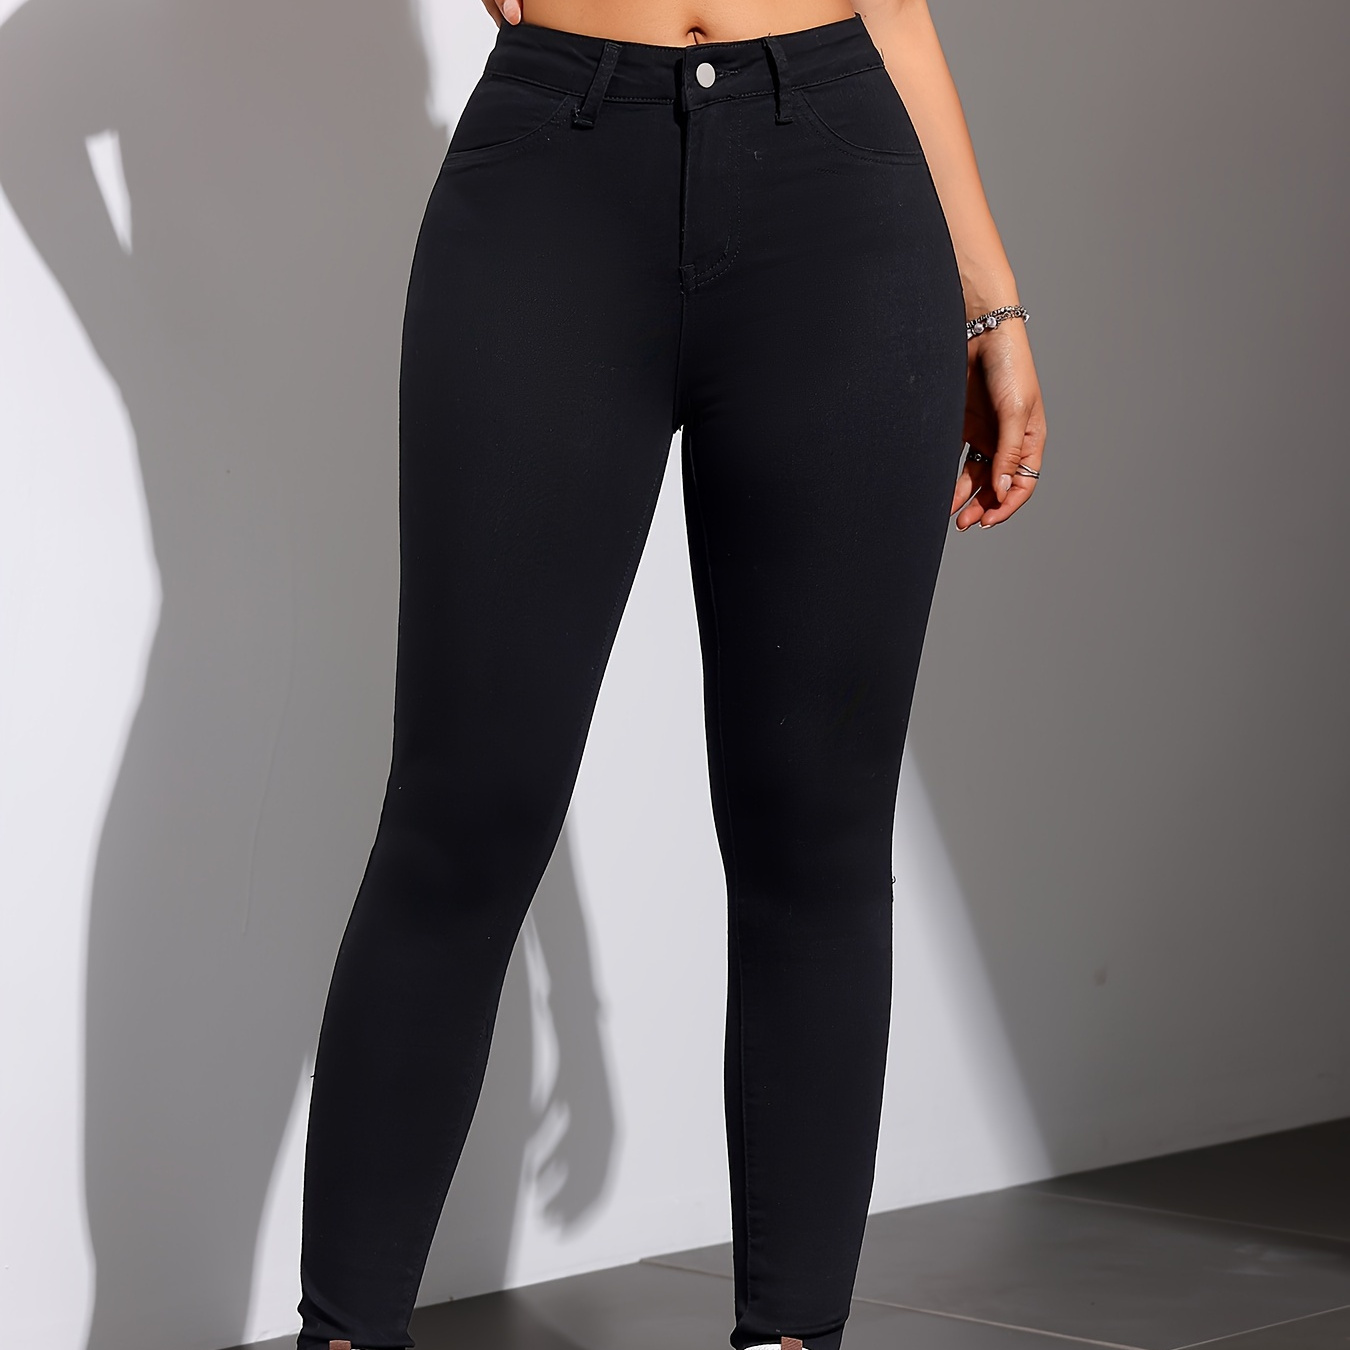 

Femmes Noir Couleur Uni Skinny Extensible Jeans, Style Décontracté, Coupe Confort Denim, Taille Haute, Pantalon Minceur Longue Longueur Pour Automne & Hiver